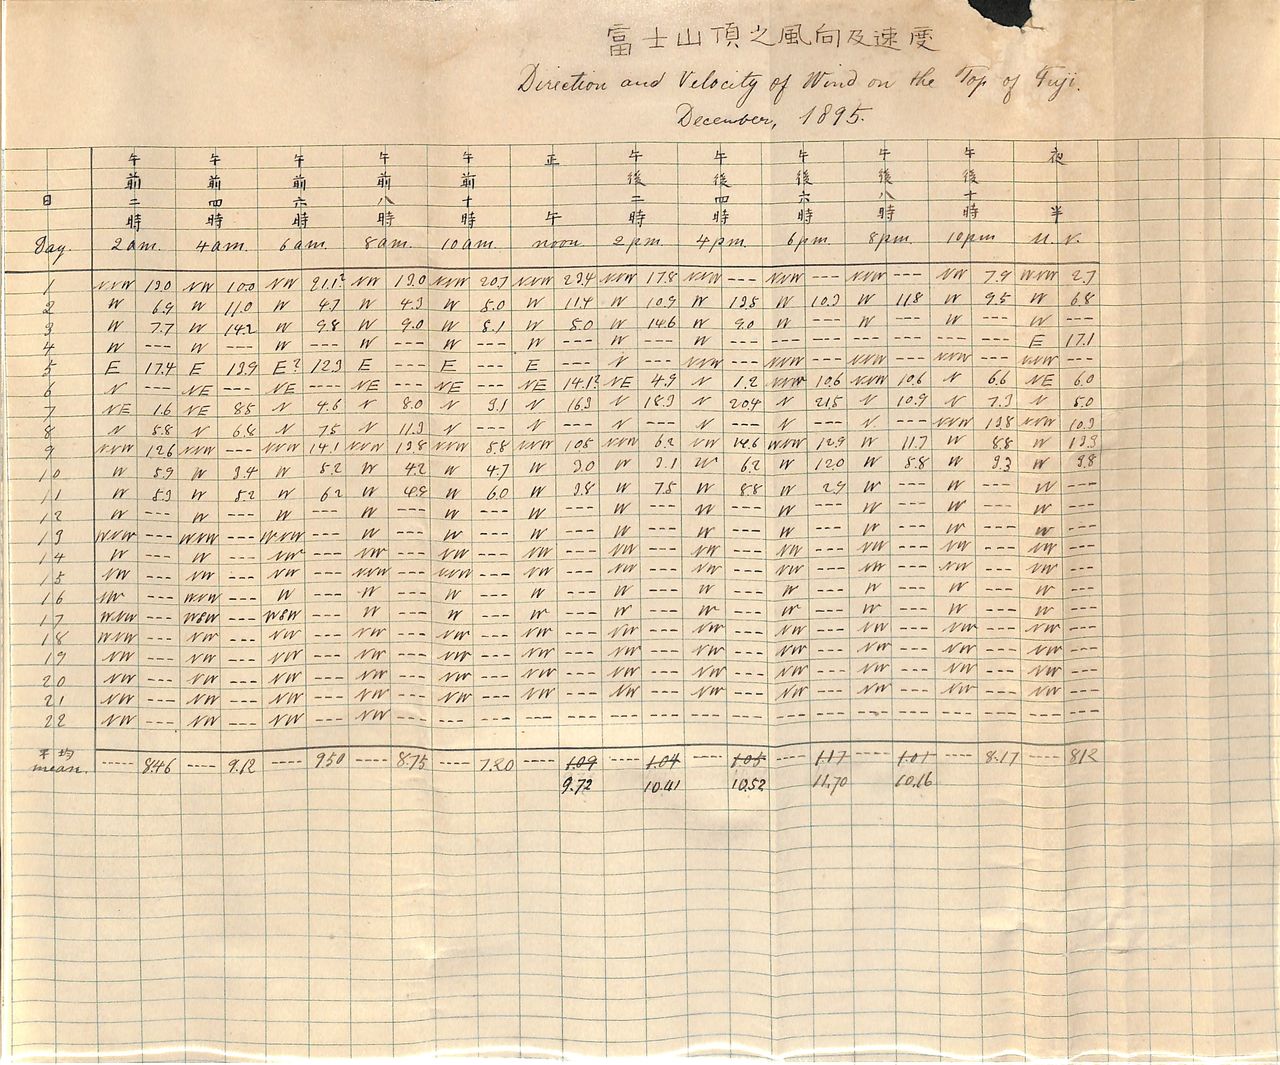 野中至・千代子夫妻の観測記録。支援者によって山頂から担ぎ下ろされた1895年12月22日で終わっている。（写真提供 : 野中到･千代子資料館、孫の野中勝氏が所蔵する）